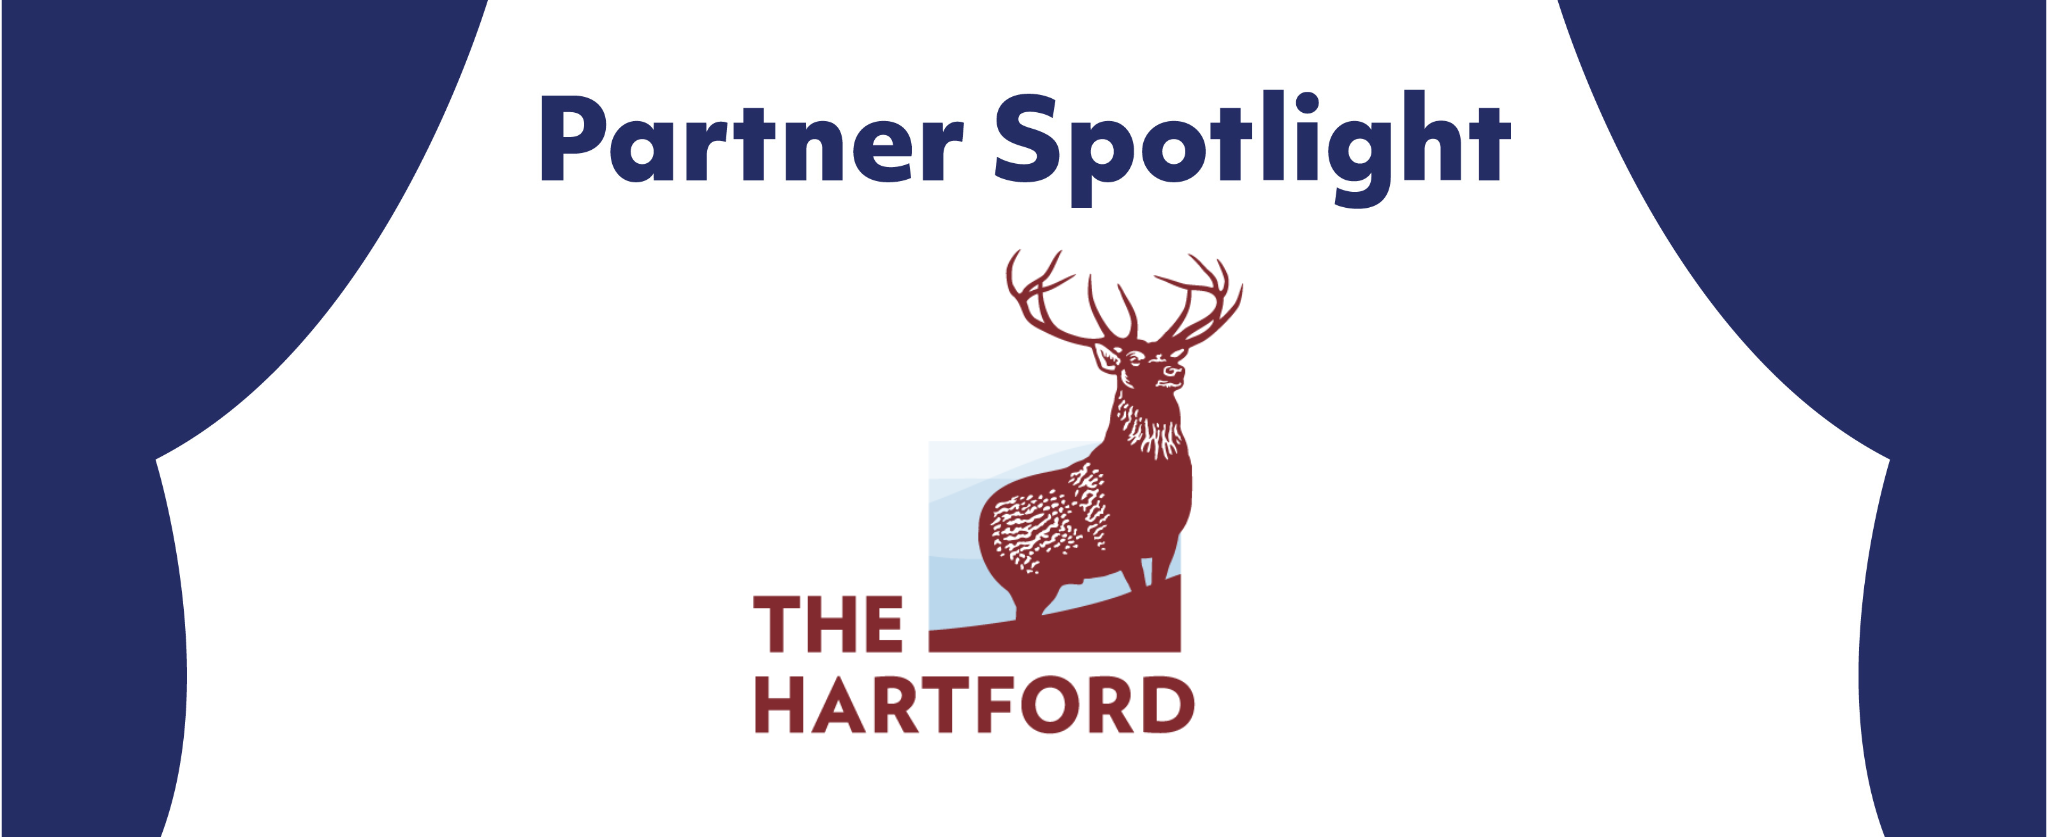 Partner Spotlight: The Hartford